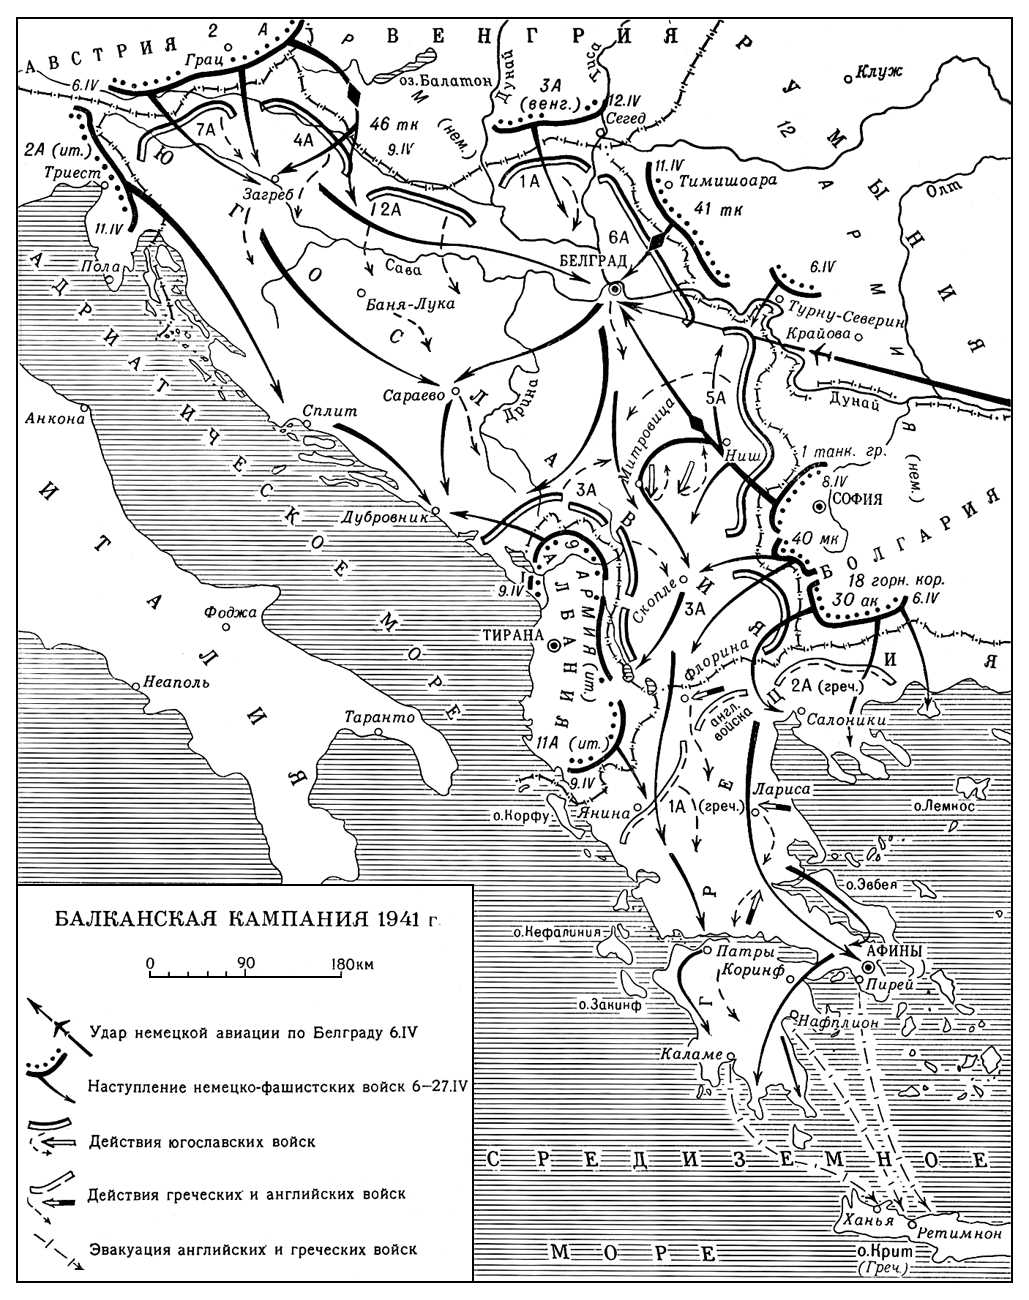 Балканская кампания 1941 г.